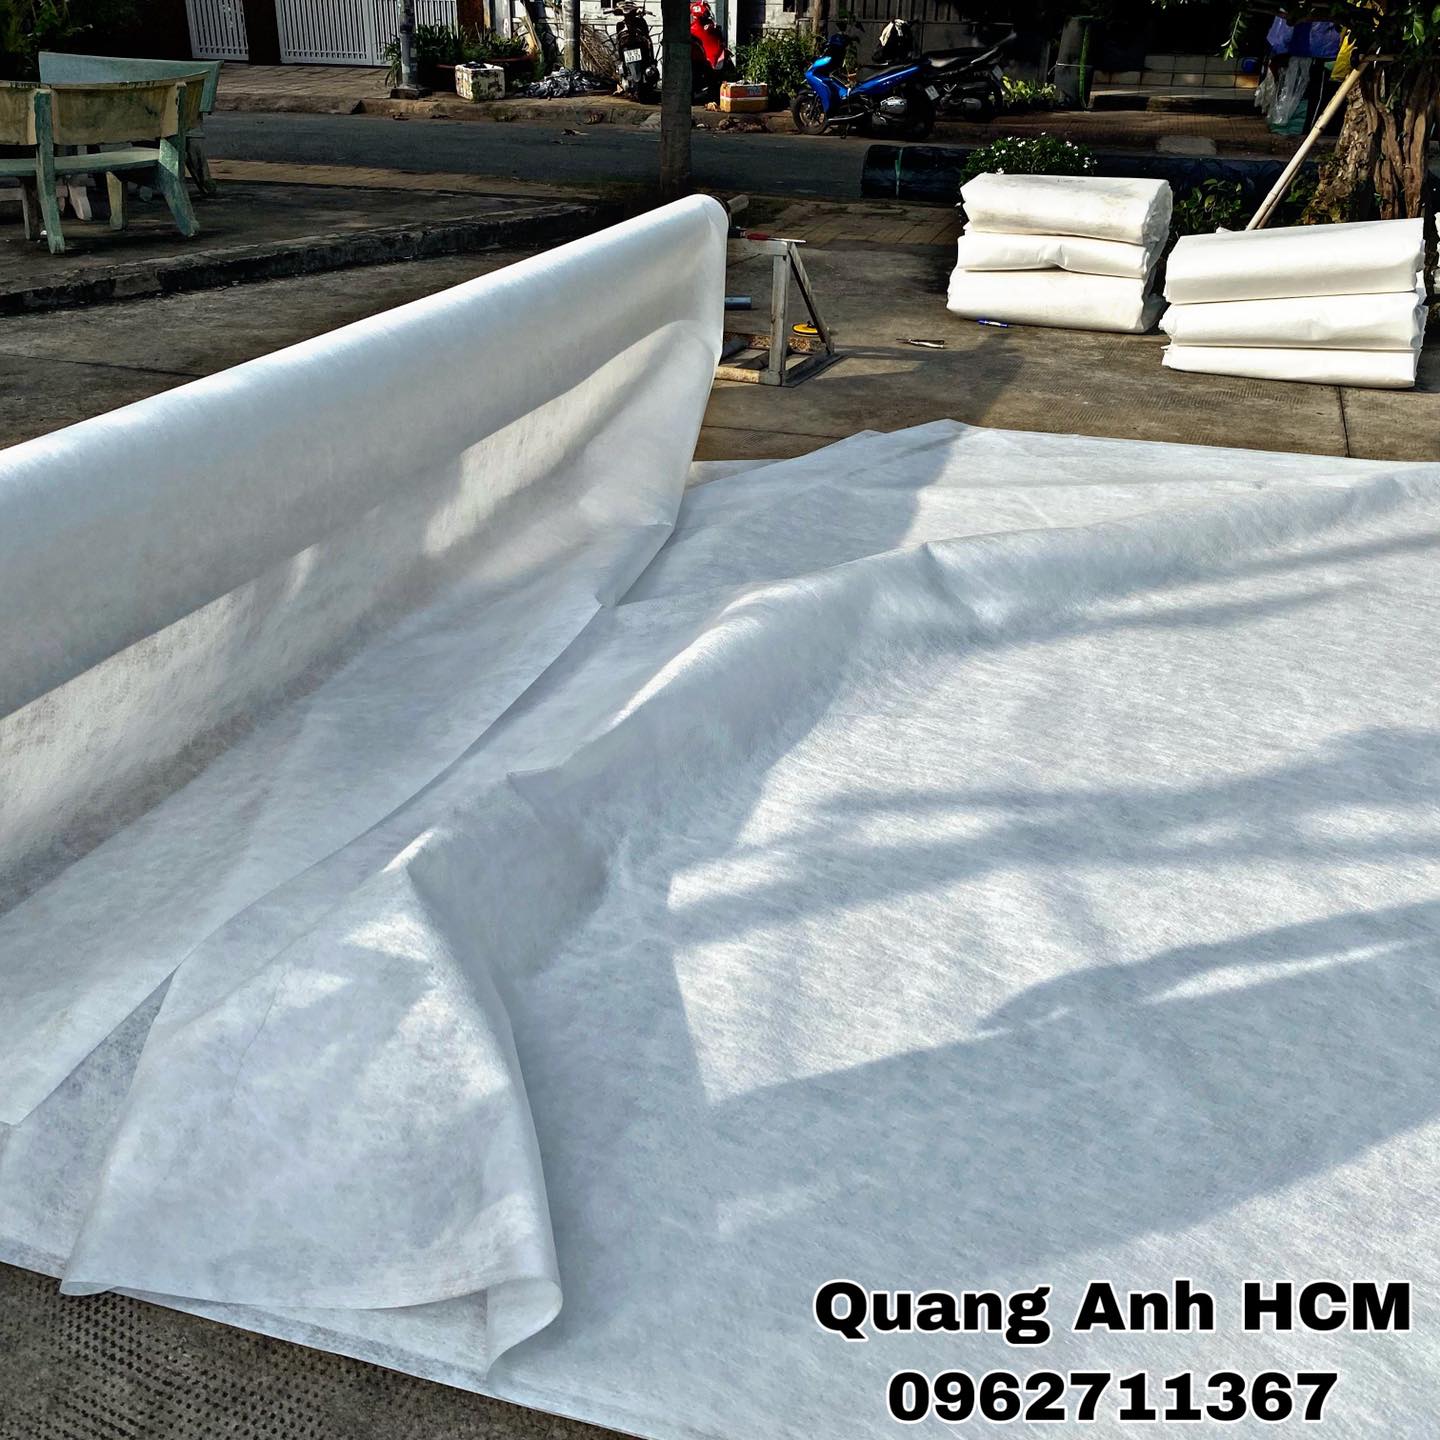 Mua vải lót trồng cây, vải địa art 9 với giá chỉ từ 18.000 đồng tại Bình Thạnh Hồ Chí Minh